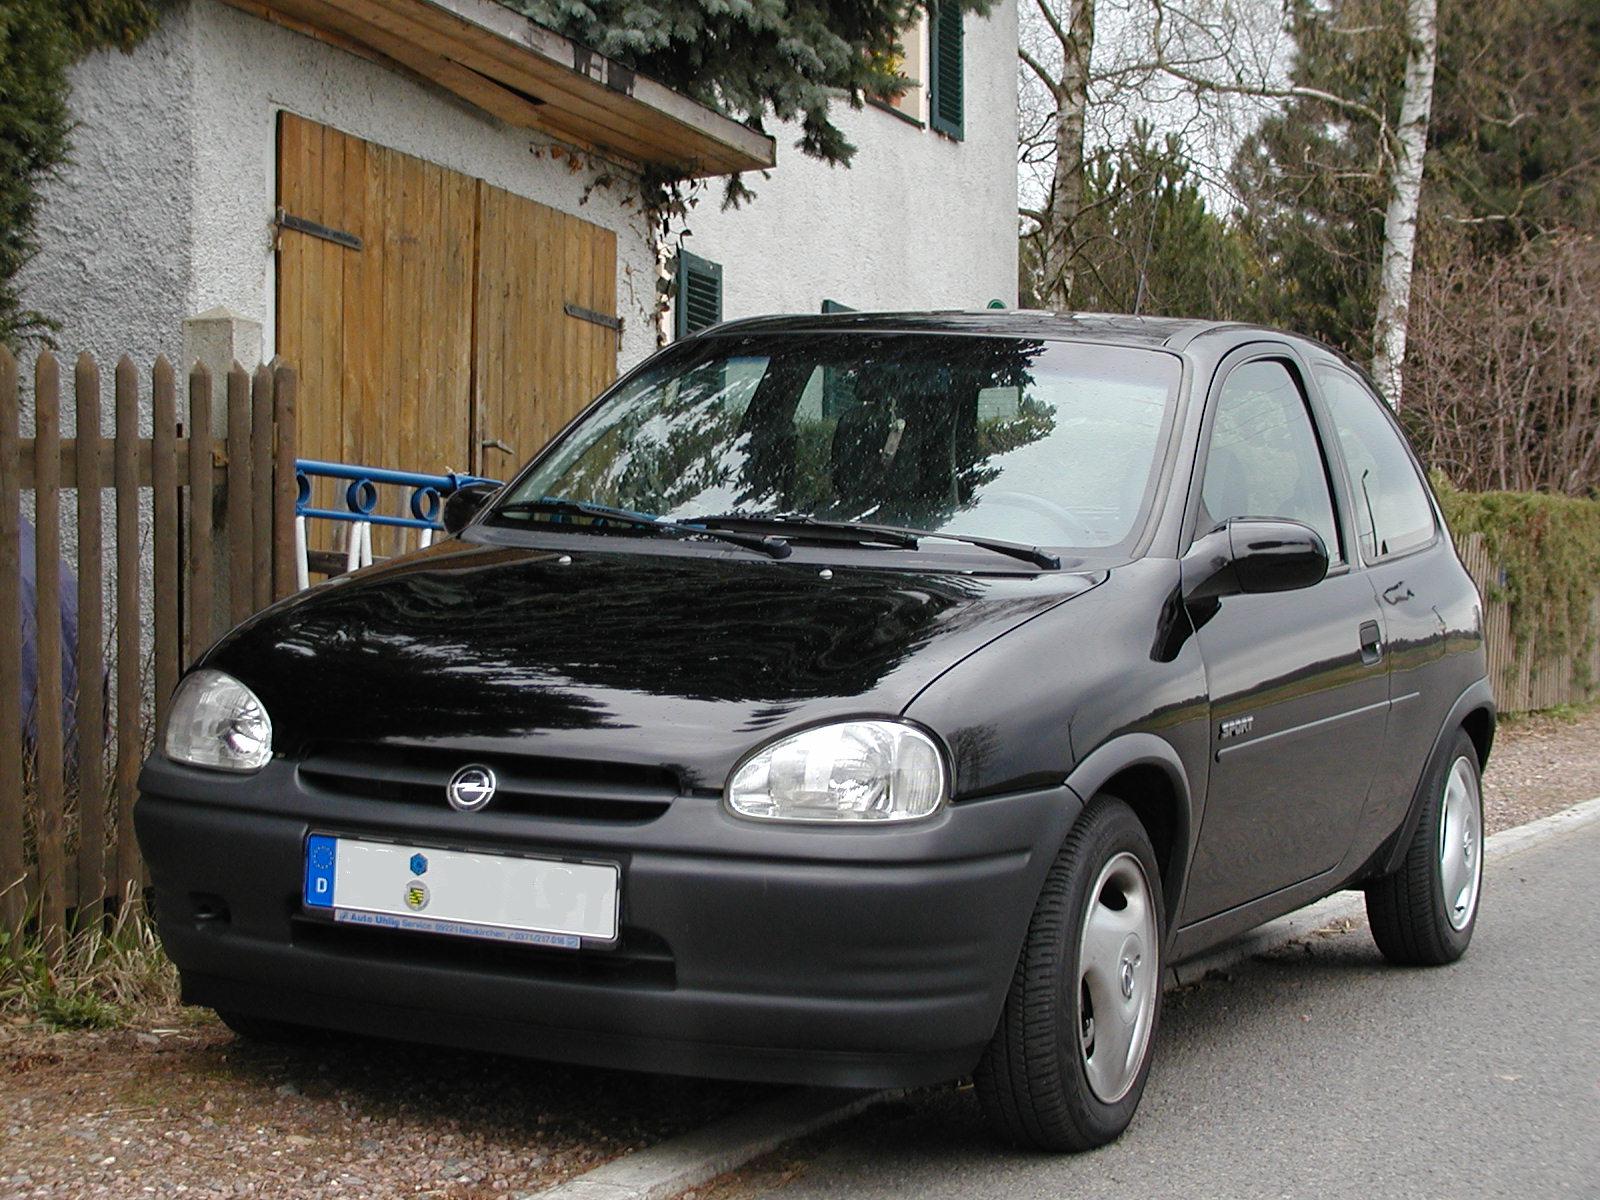 File:Opel corsa b sport.JPG